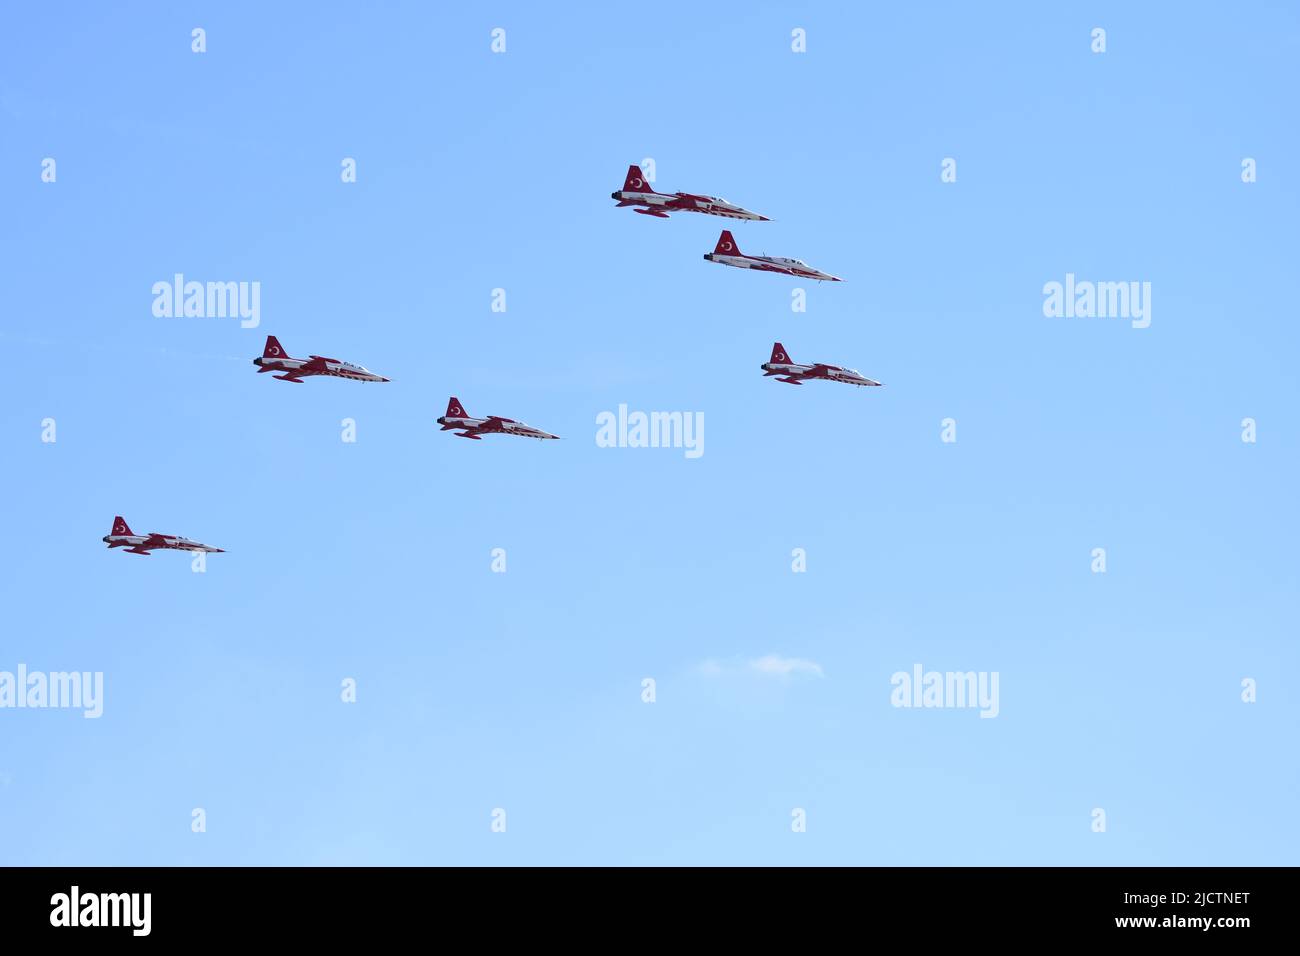 Istanbul Turkey 24 09 2021 le Stelle turche sono la squadra di dimostrazione aerobica dell'Aeronautica militare turca e la squadra nazionale di aerobica della Turchia. Foto Stock